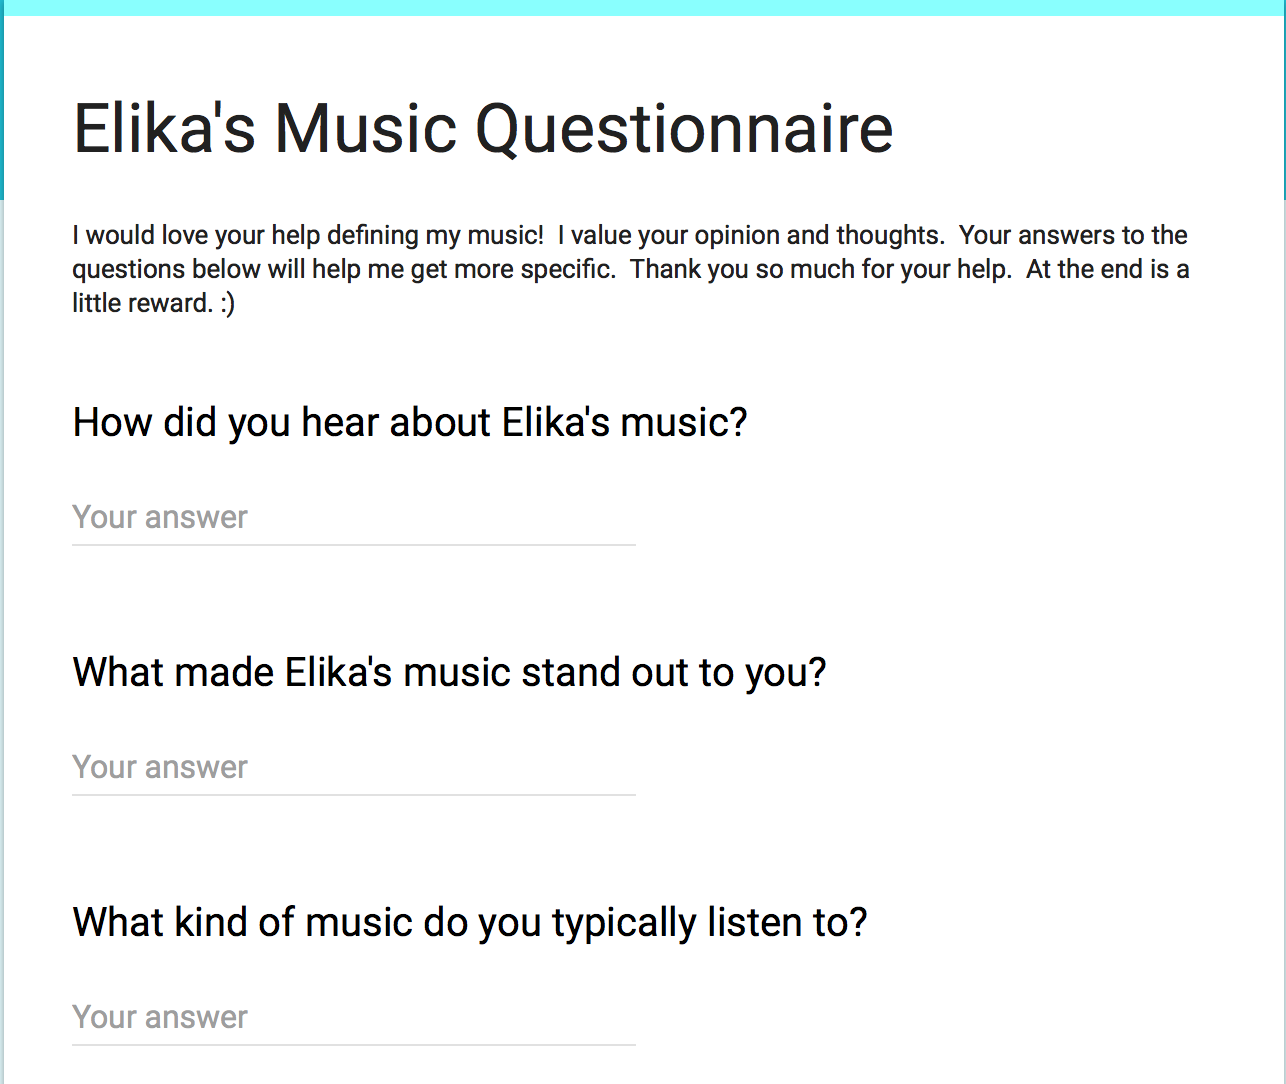 Elika's Music Questionnaire